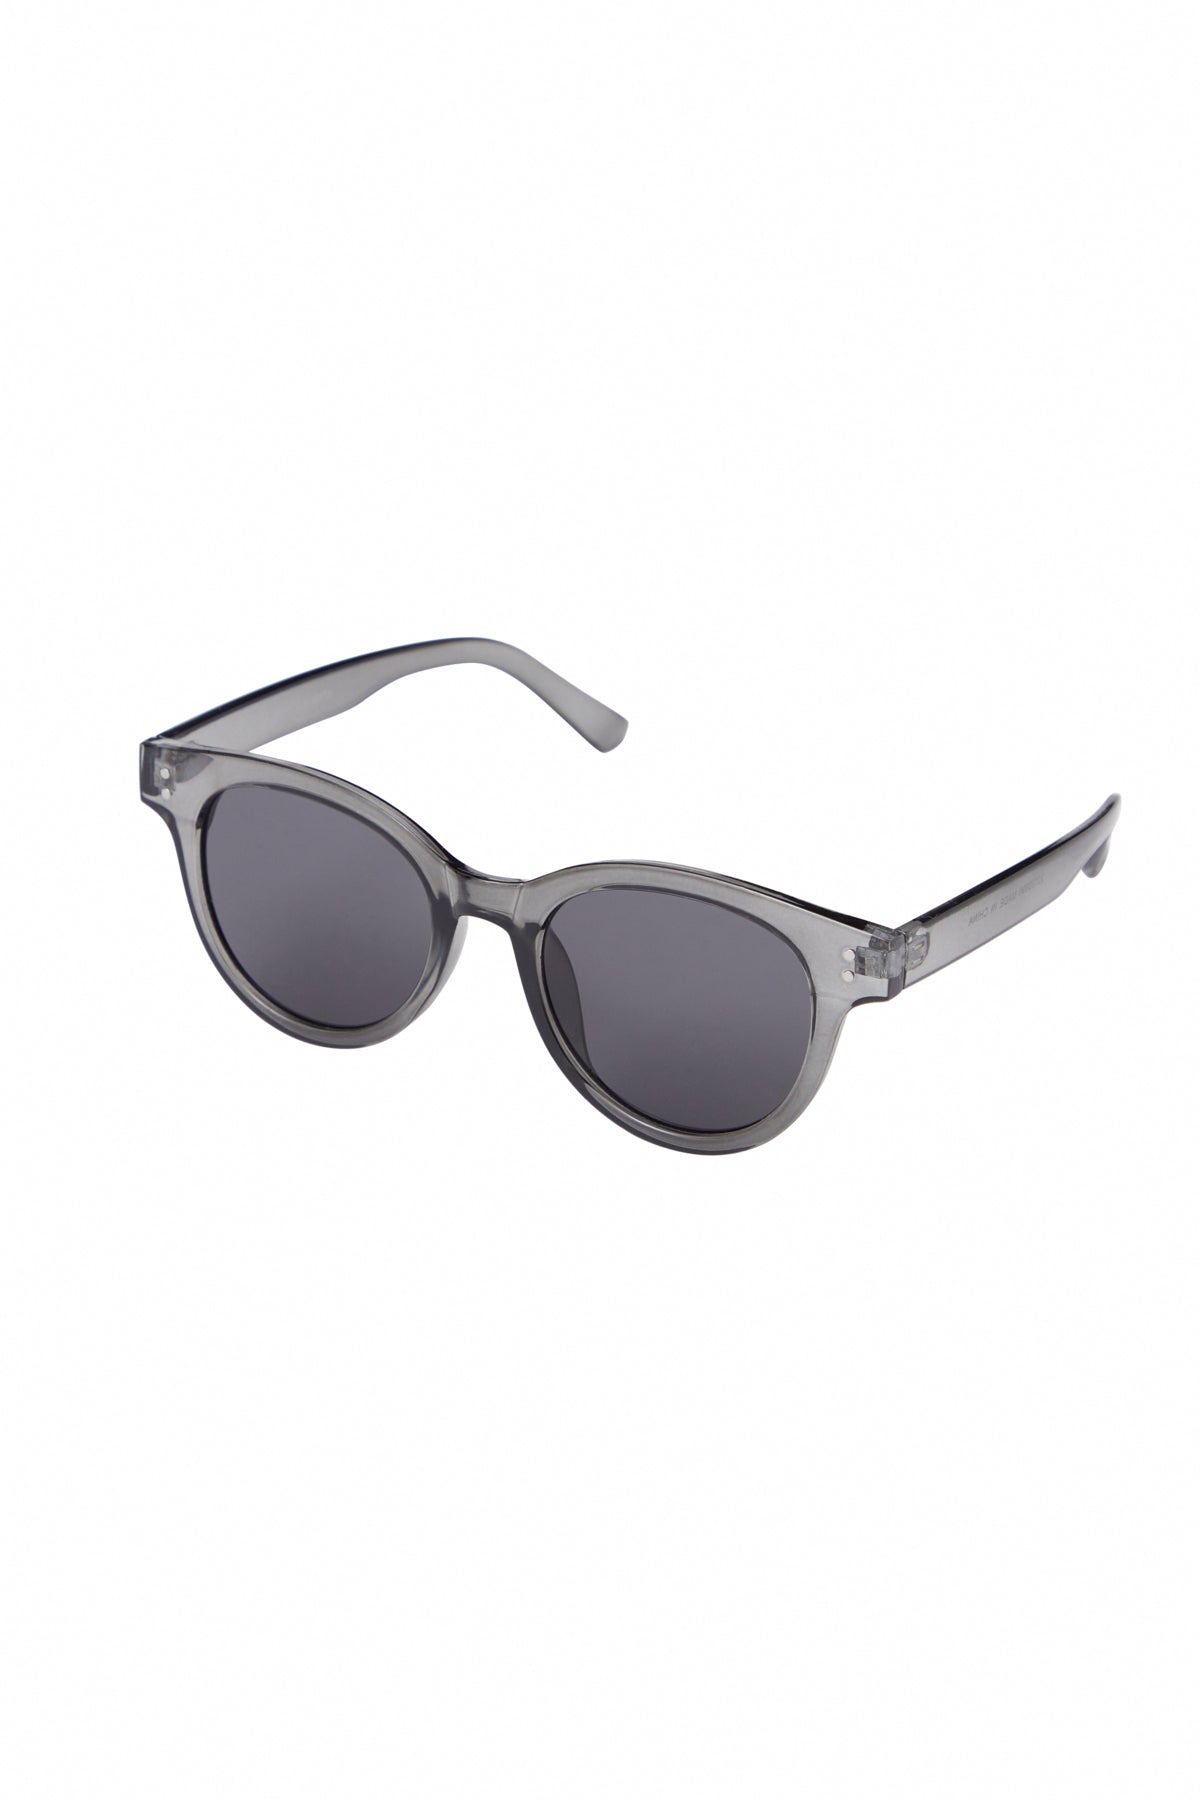 ICHI - Sunglasses Leestina Smoke Gray